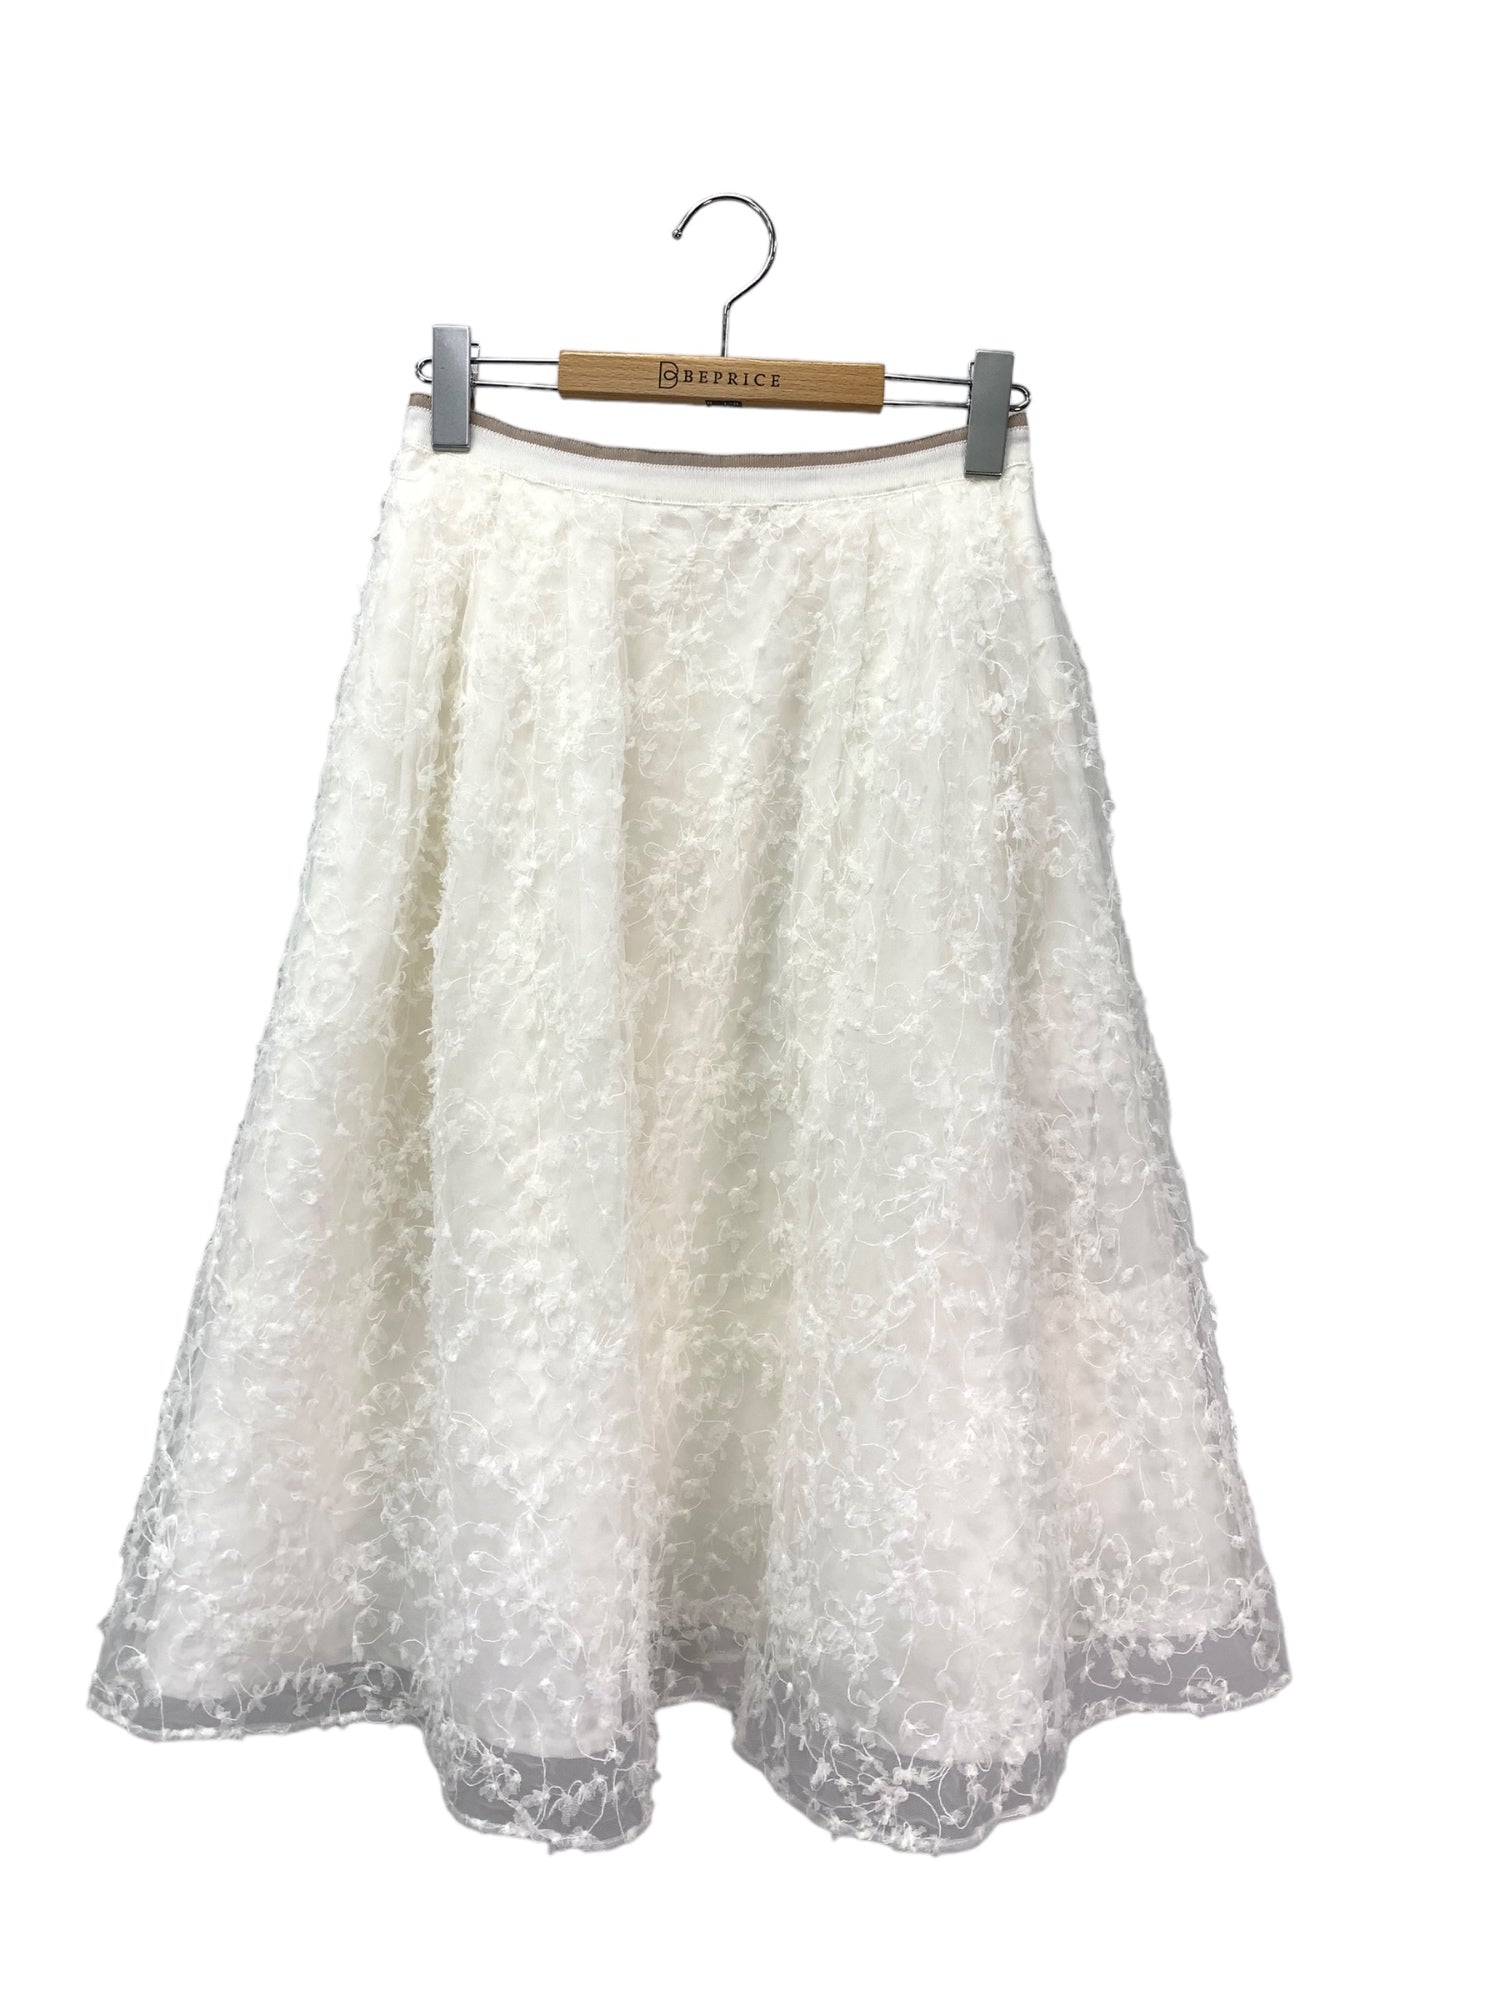 フォクシーブティック Skirt Manoir 39683 スカート 38 ホワイト フラワーモチーフ | 中古ブランド品 古着通販ビープライス